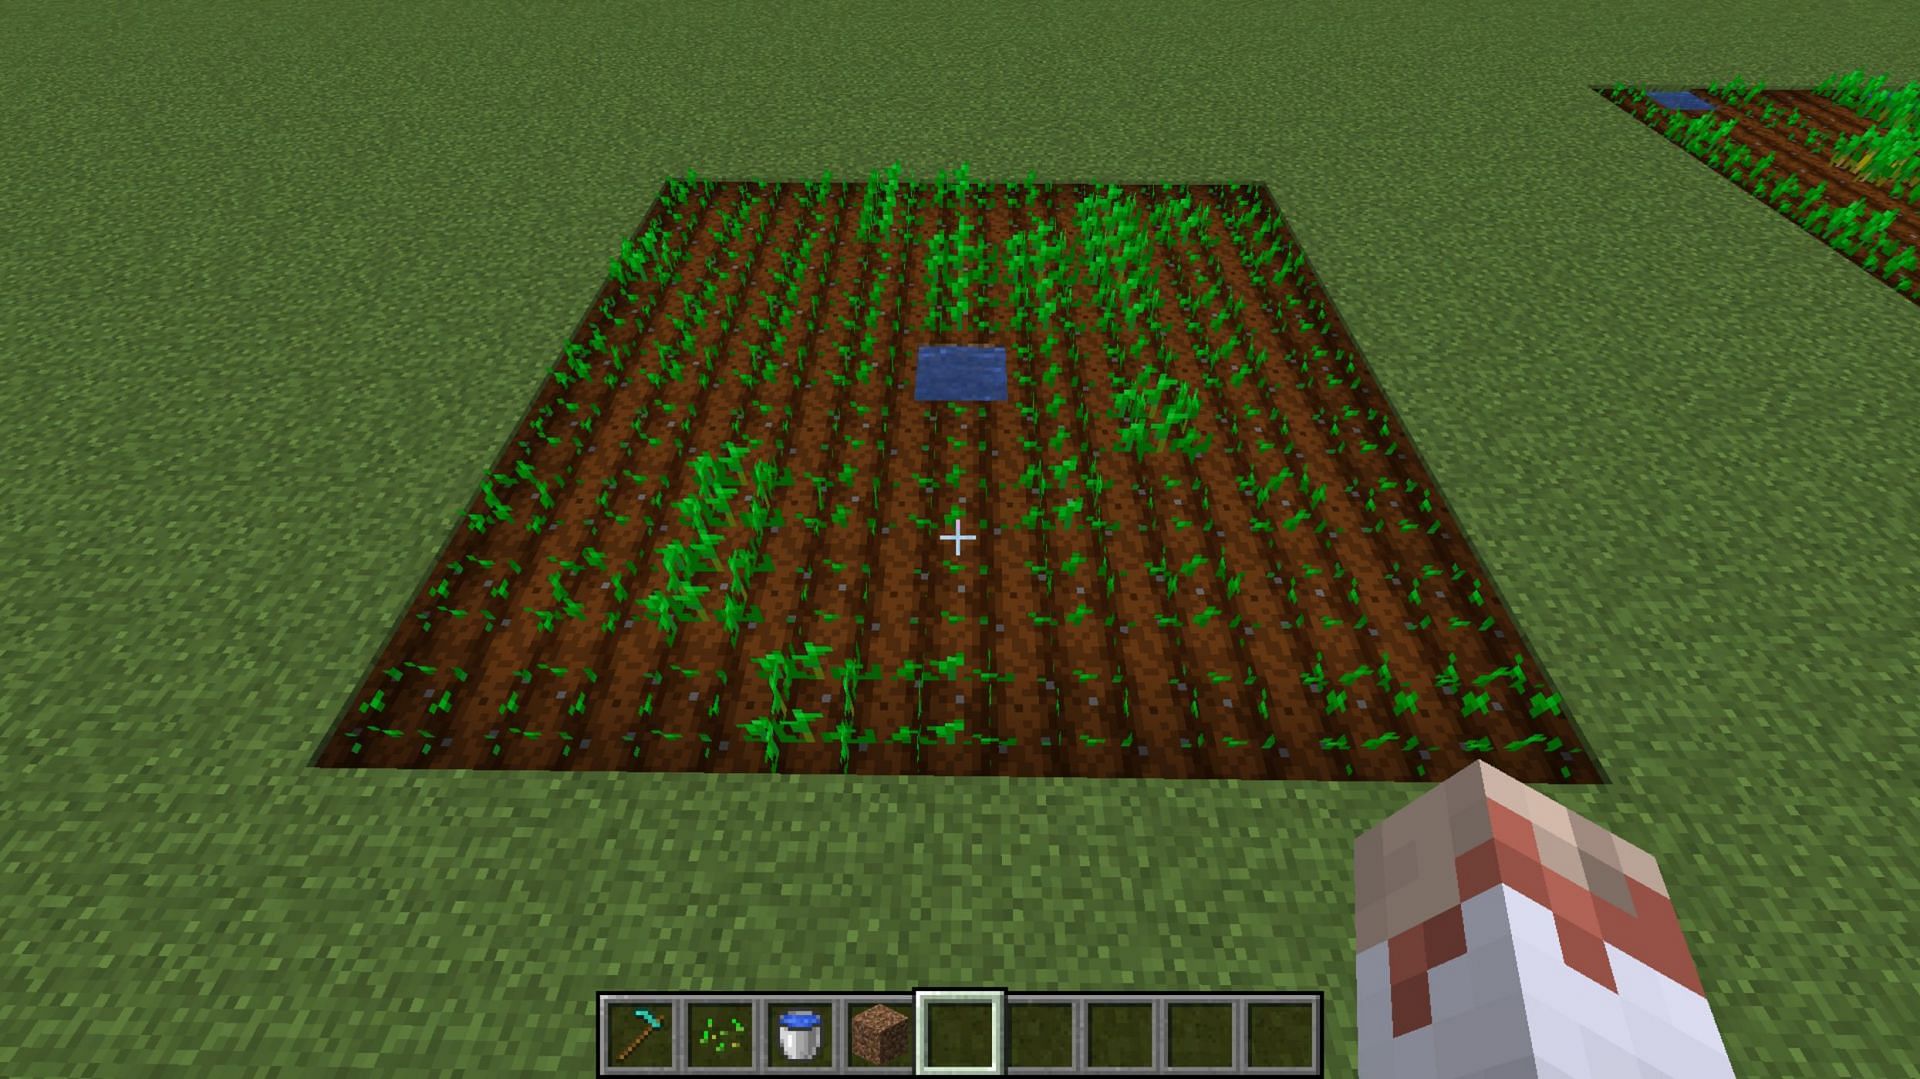 A basic farm plot created by a player (Image via u/Thattiguy/Reddit)